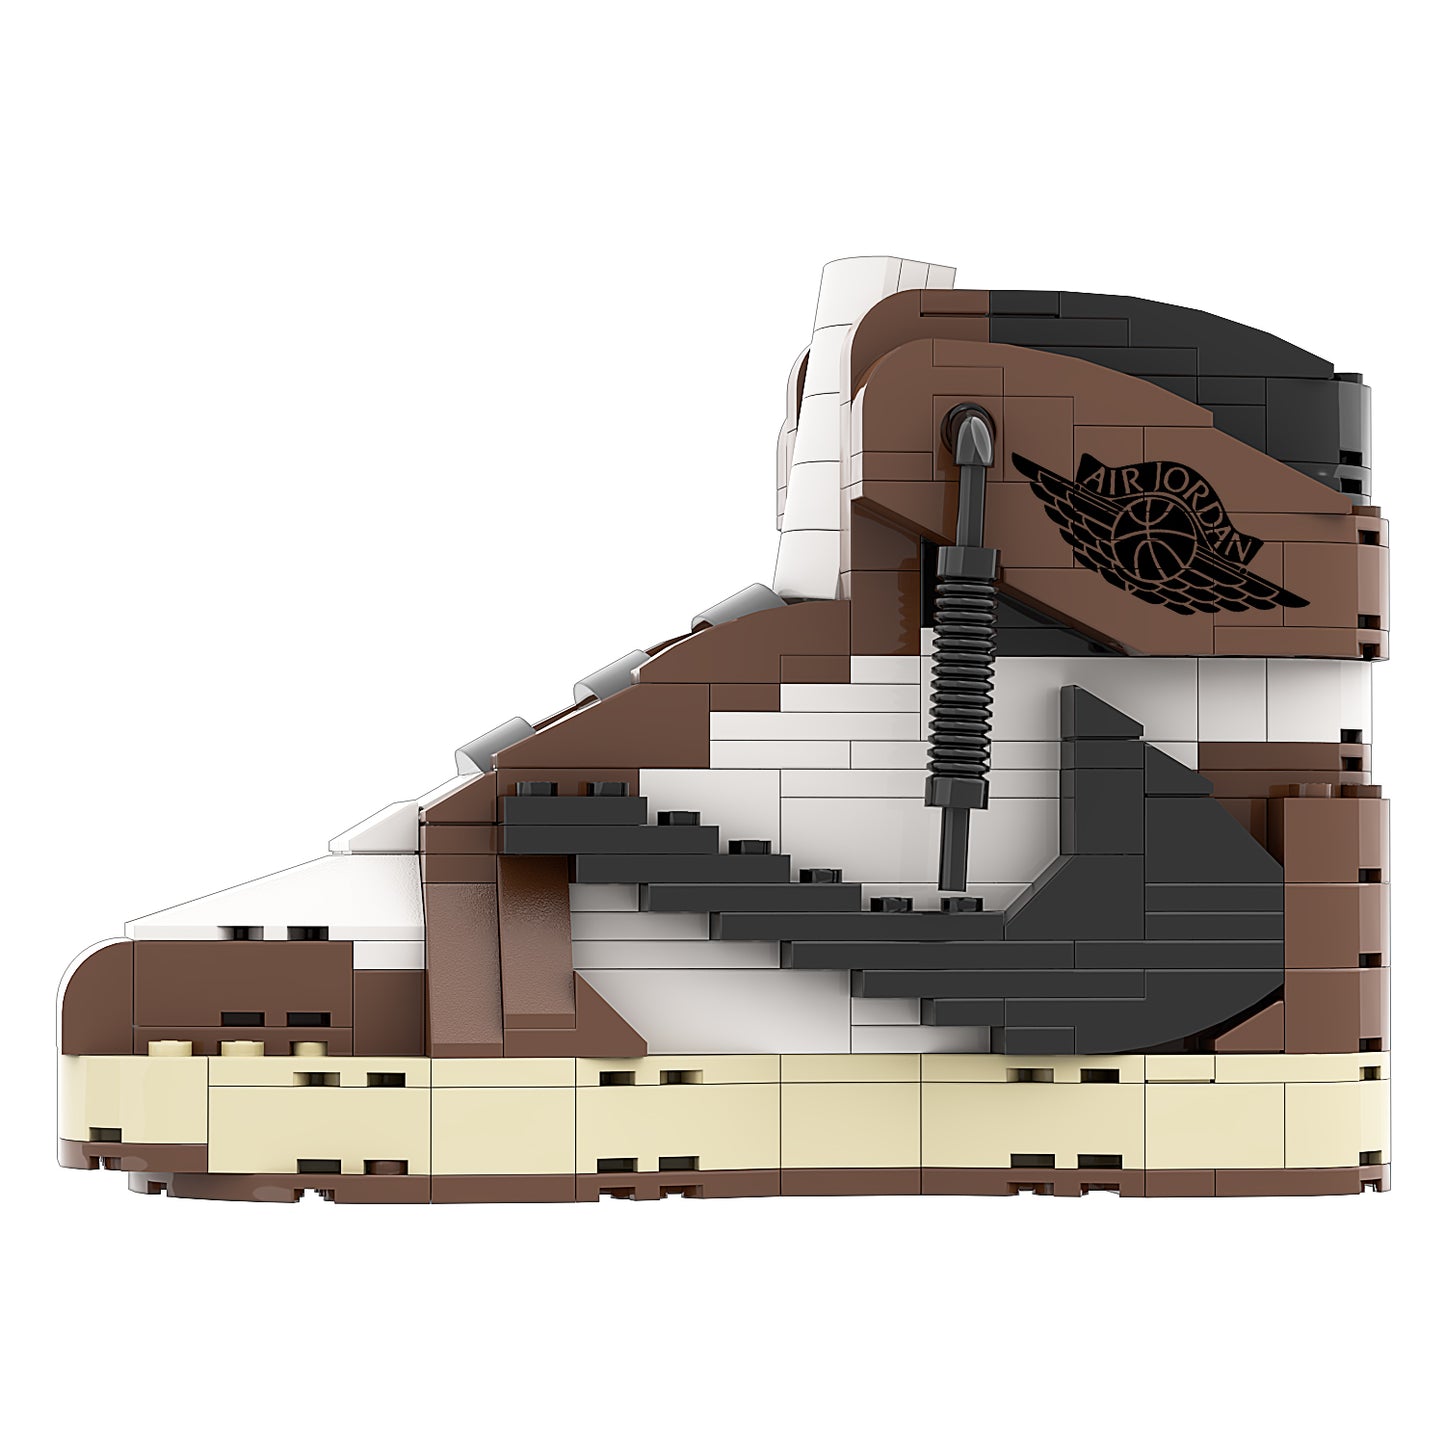 REGULAR "AJ1 Travis Scott OG High" Sneaker Bricks with Mini Figure